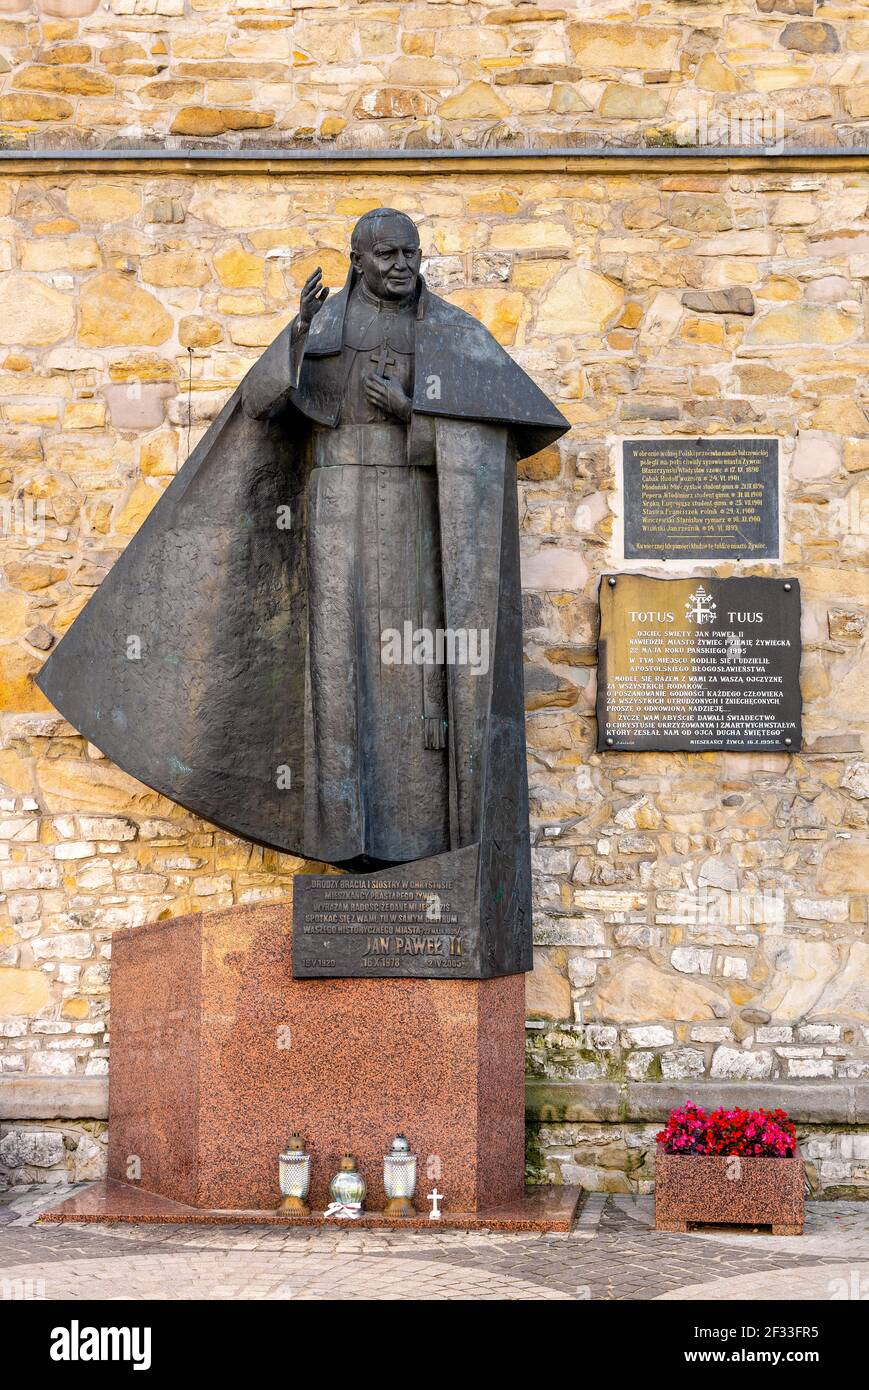 Zywiec, Polonia - 30 agosto 2020: Statua di Papa Giovanni Paolo II dello scultore Czeslaw Dzwigaj al campanile in pietra nel centro storico della città di Zywiec in Slesia Foto Stock